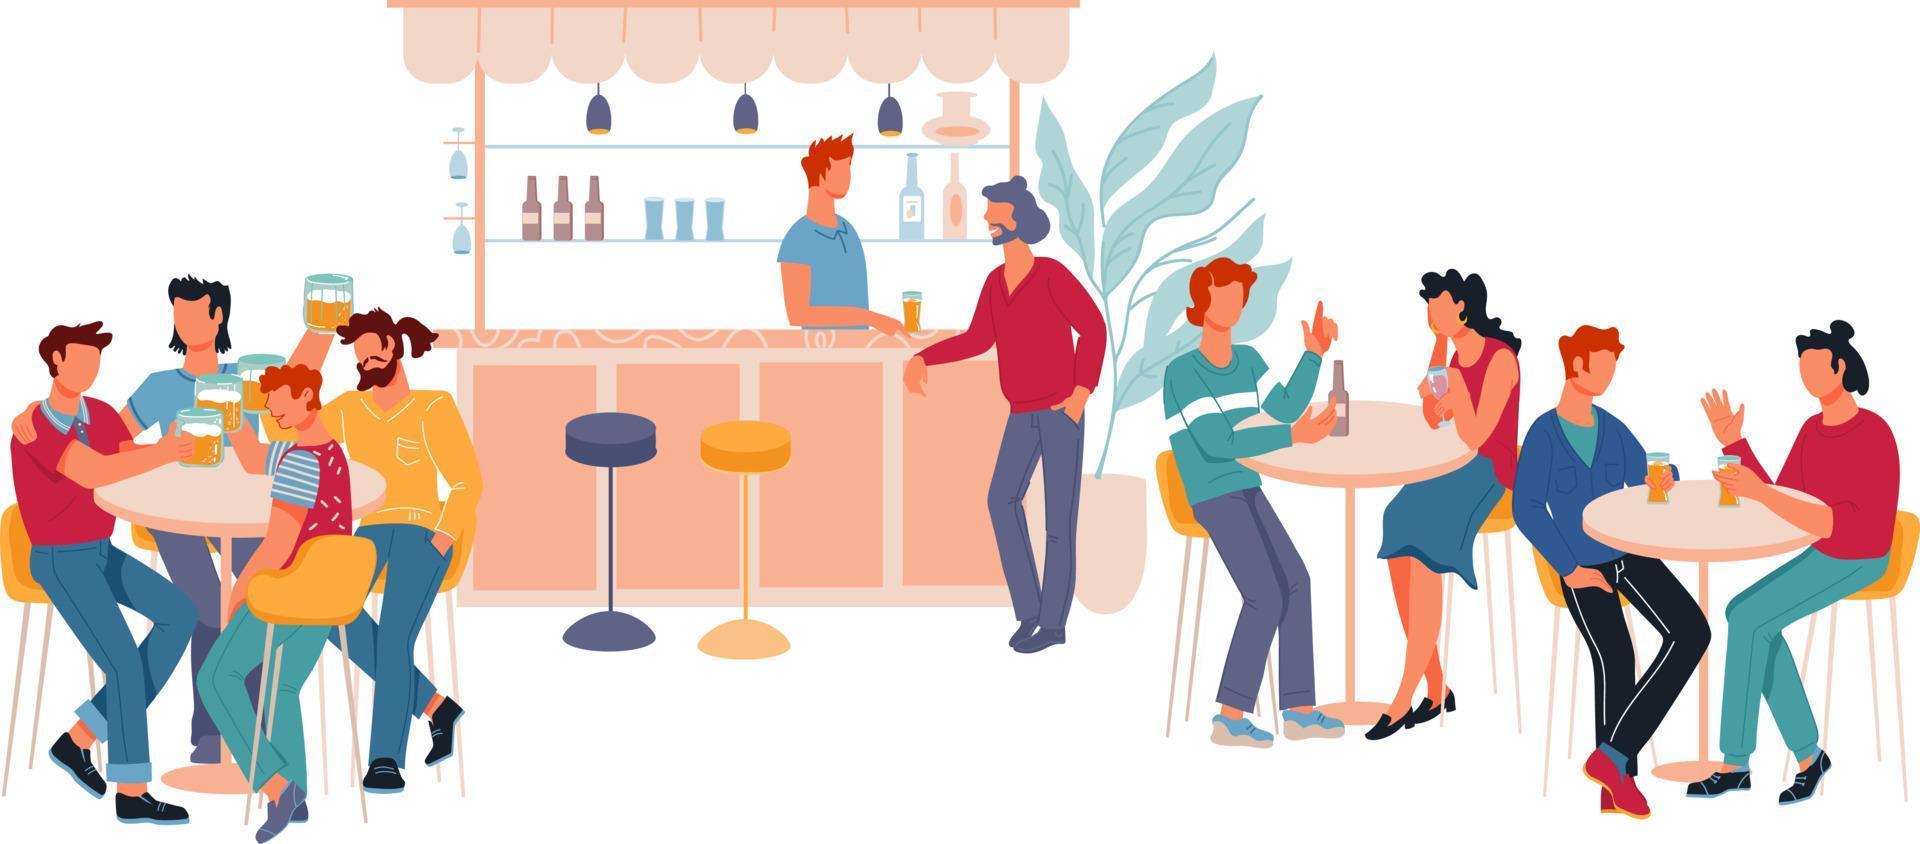 ristorante o bar interno con personaggi dei cartoni animati seduti ai tavoli e bere birra. pub con visitatori che parlano e brindano con bevande alcoliche. illustrazione vettoriale piatta isolata.